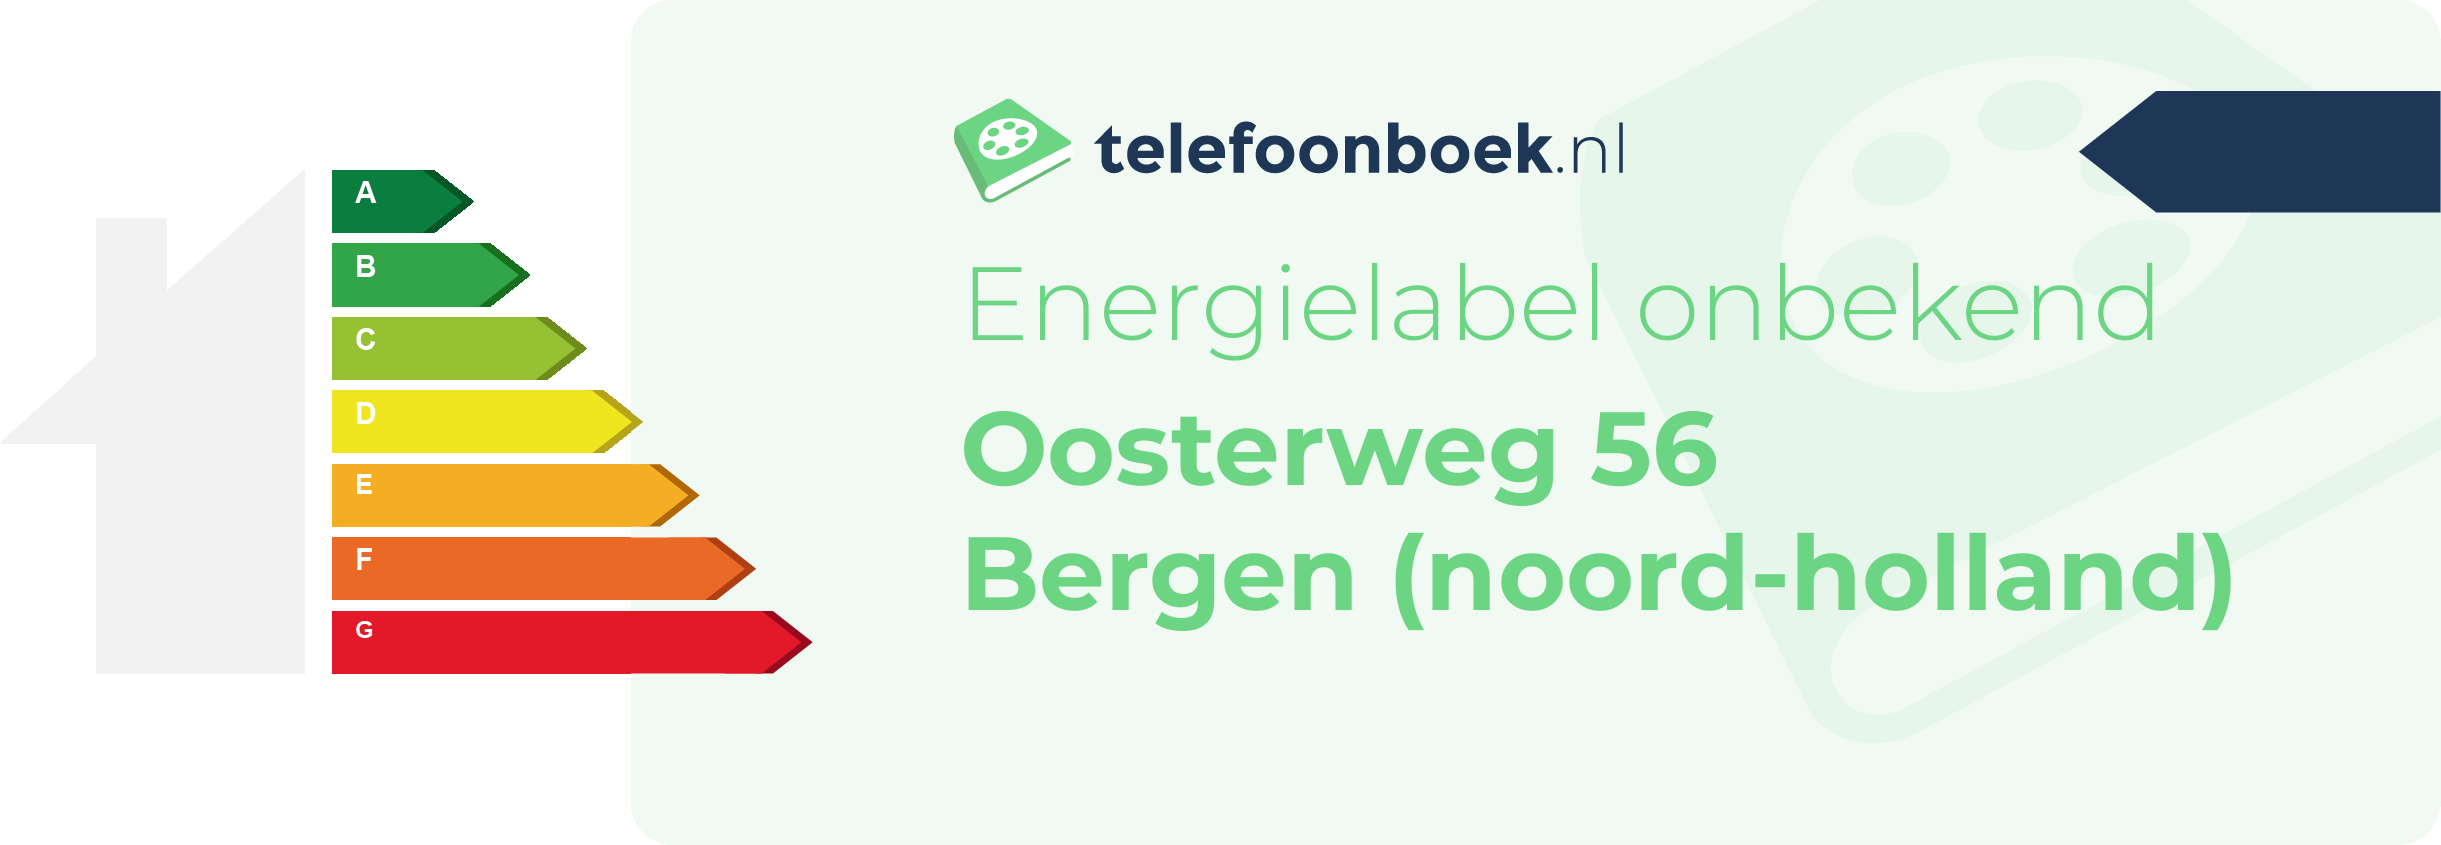 Energielabel Oosterweg 56 Bergen (Noord-Holland)